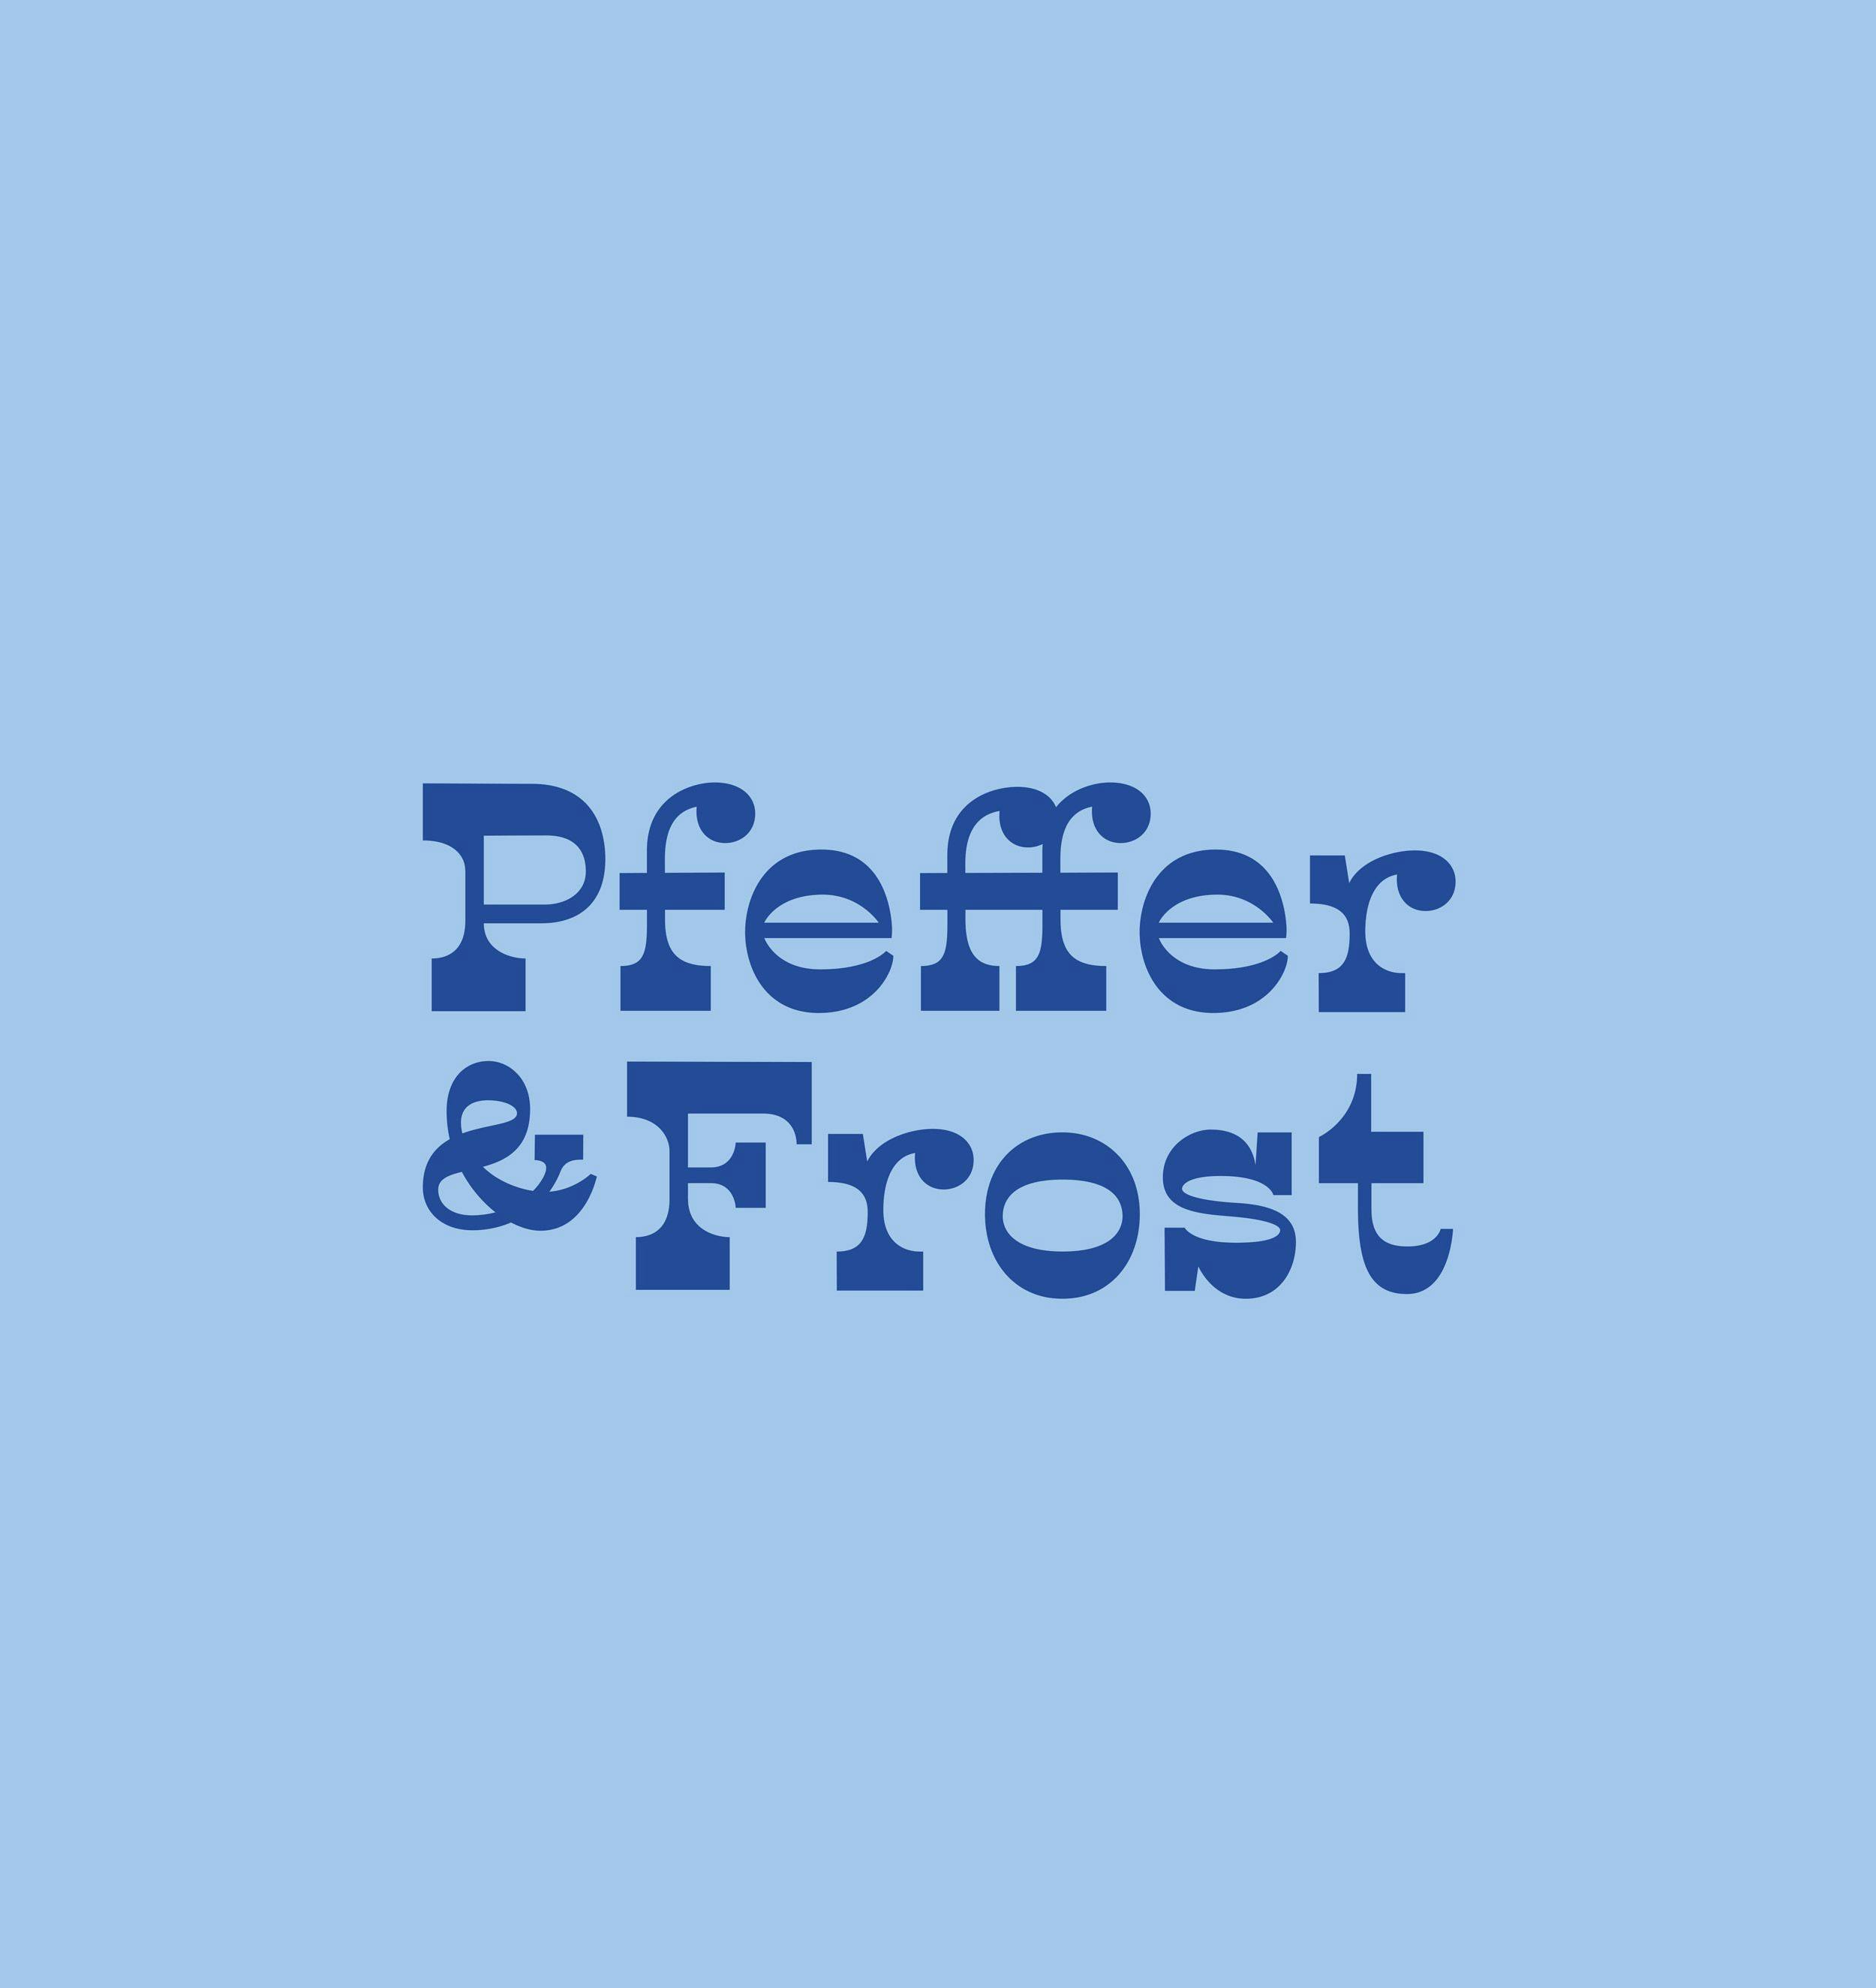 Pfeffer & Frost Logos